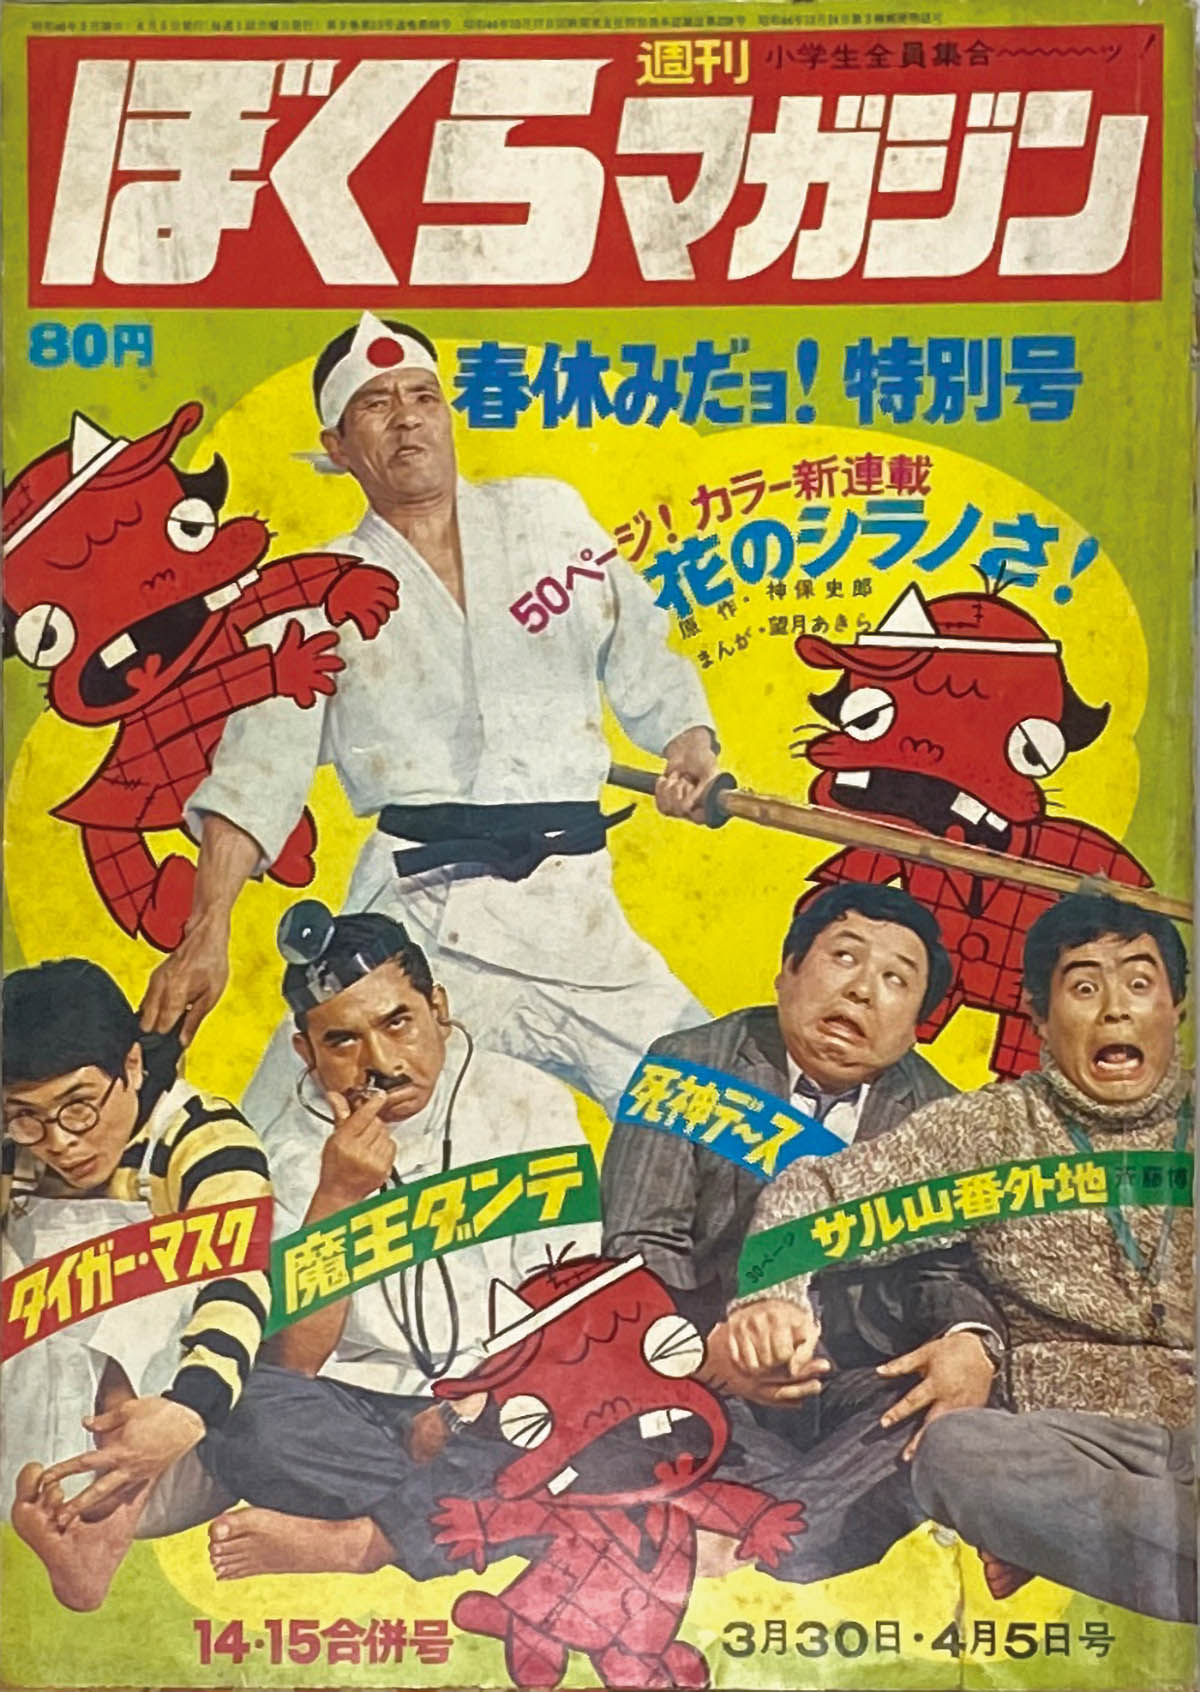 ぼくらマガジン 1971年 21号 - bteubsnl.org